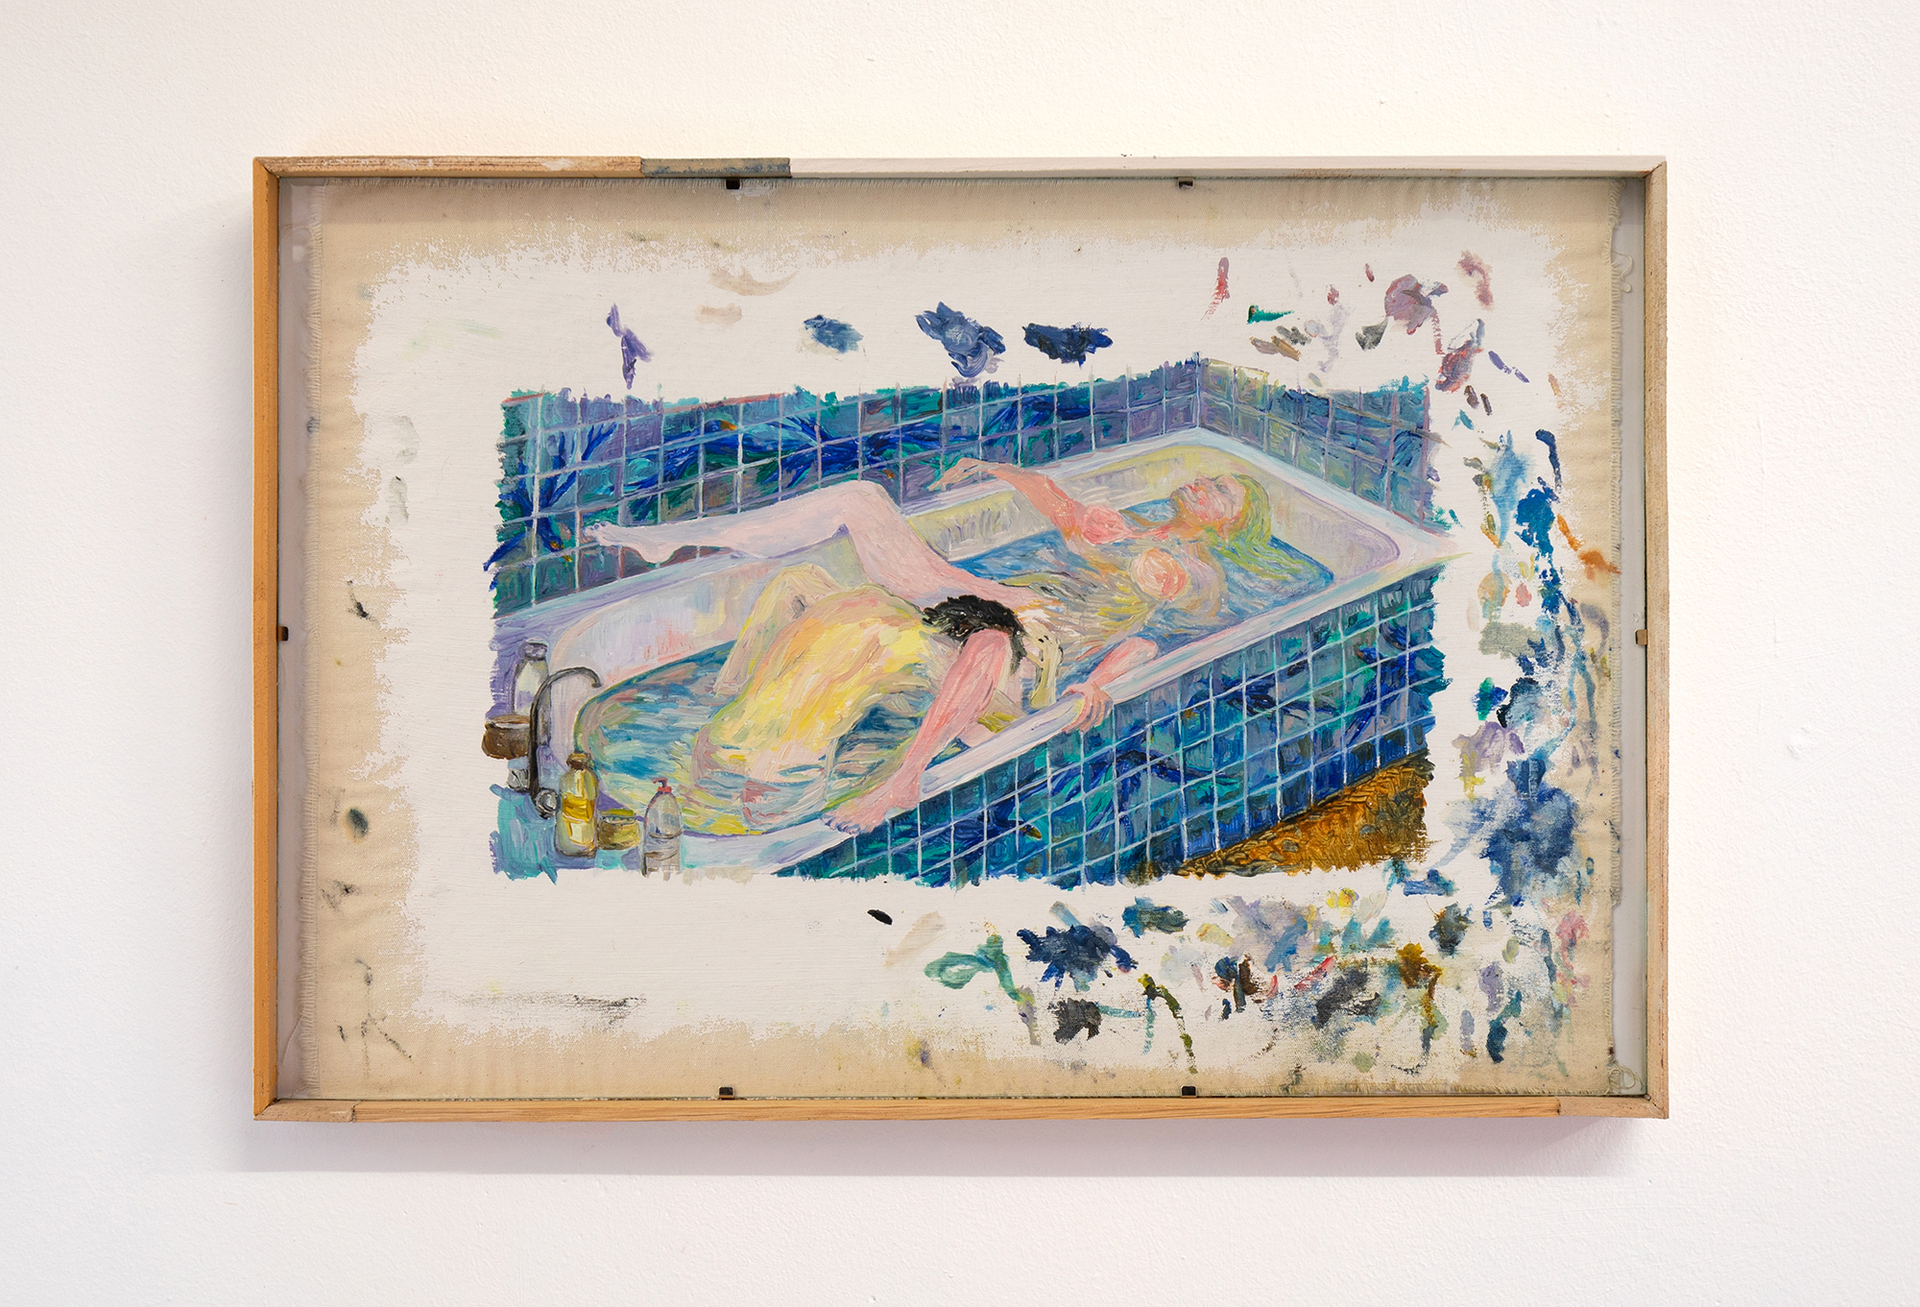 Marivaudage (Le Bain), 2022, oil on canvas, glass and wood artist frame, 31 × 46 cm